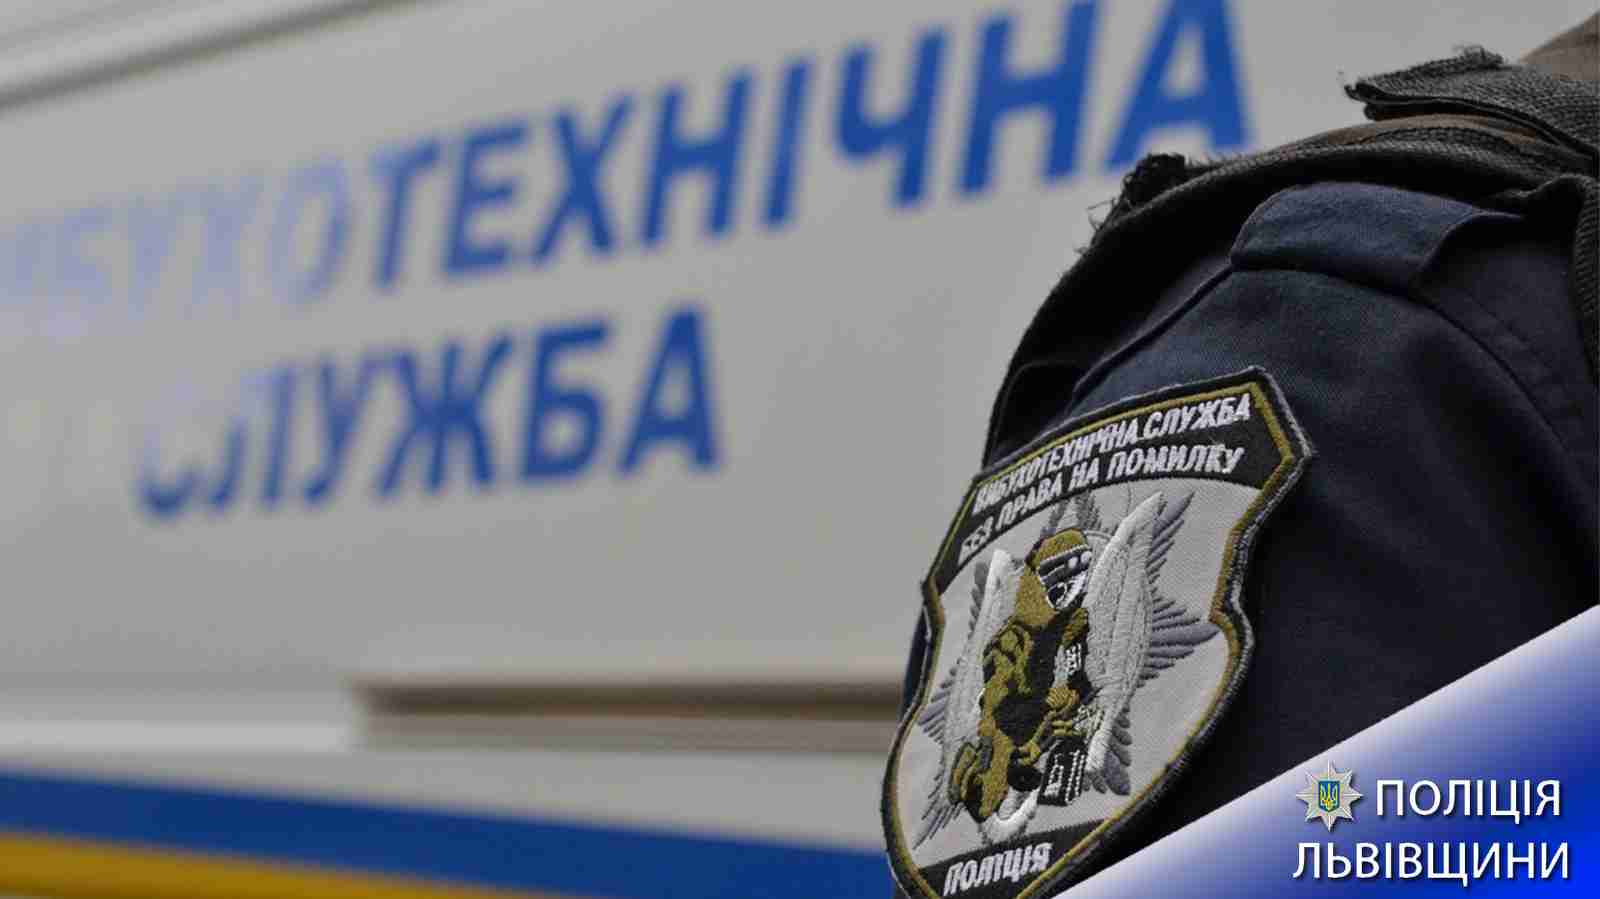 Поліція Львівщини затримала чоловіка, який надав неправдиве повідомлення про замінування